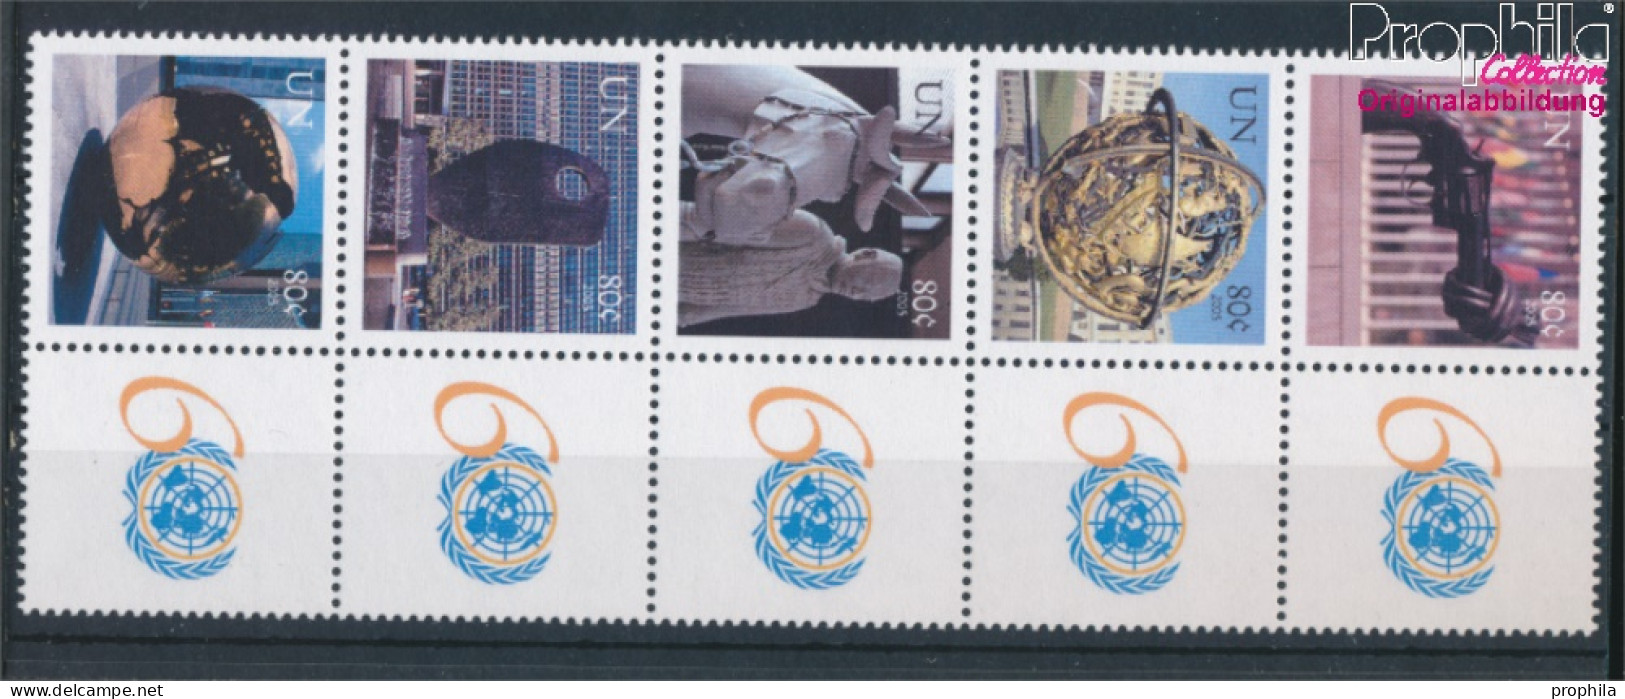 UNO - New York 977Zf-981Zf Zehnerblock (kompl.Ausg.) Postfrisch 2005 Grußmarken (10325905 - Unused Stamps